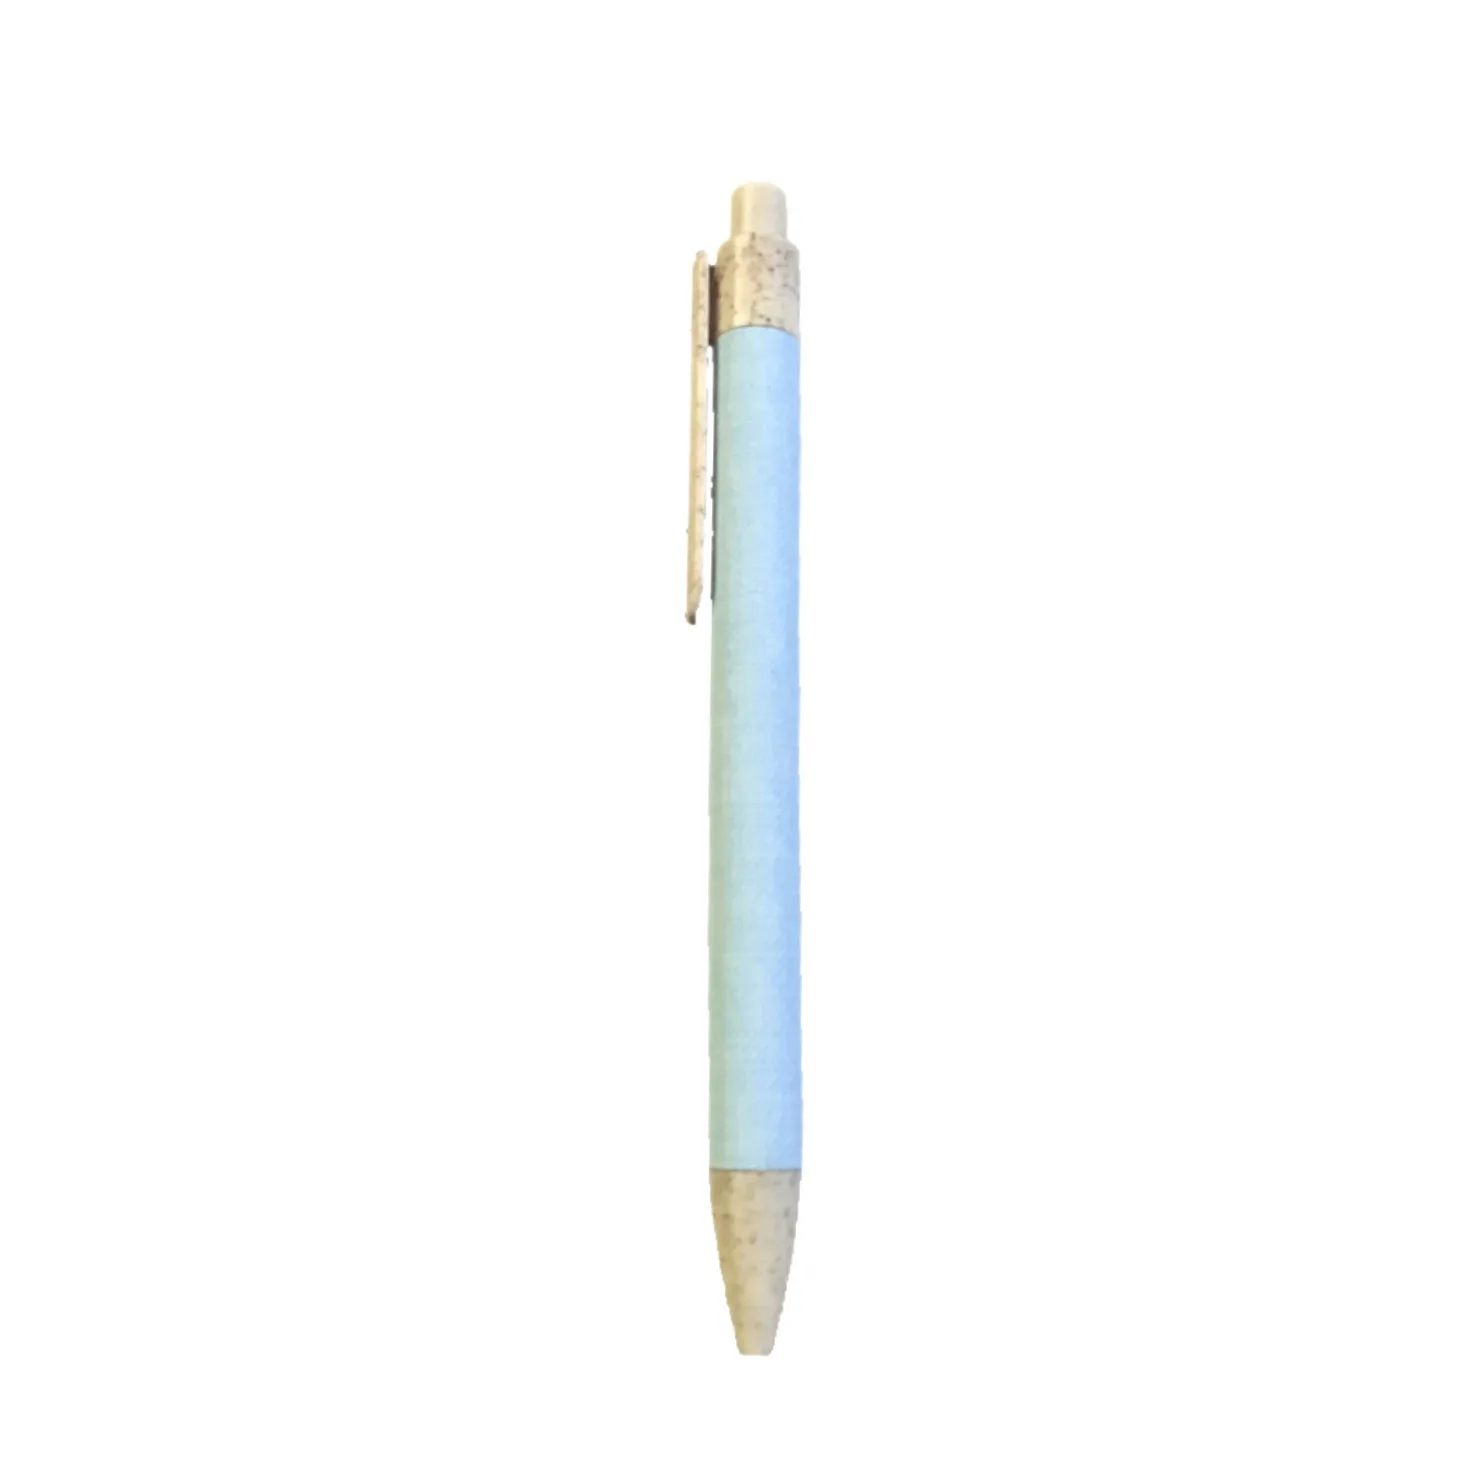 Press ballpoint pen degradable kraft paper tube pen wheat straw straight grain advertising pen